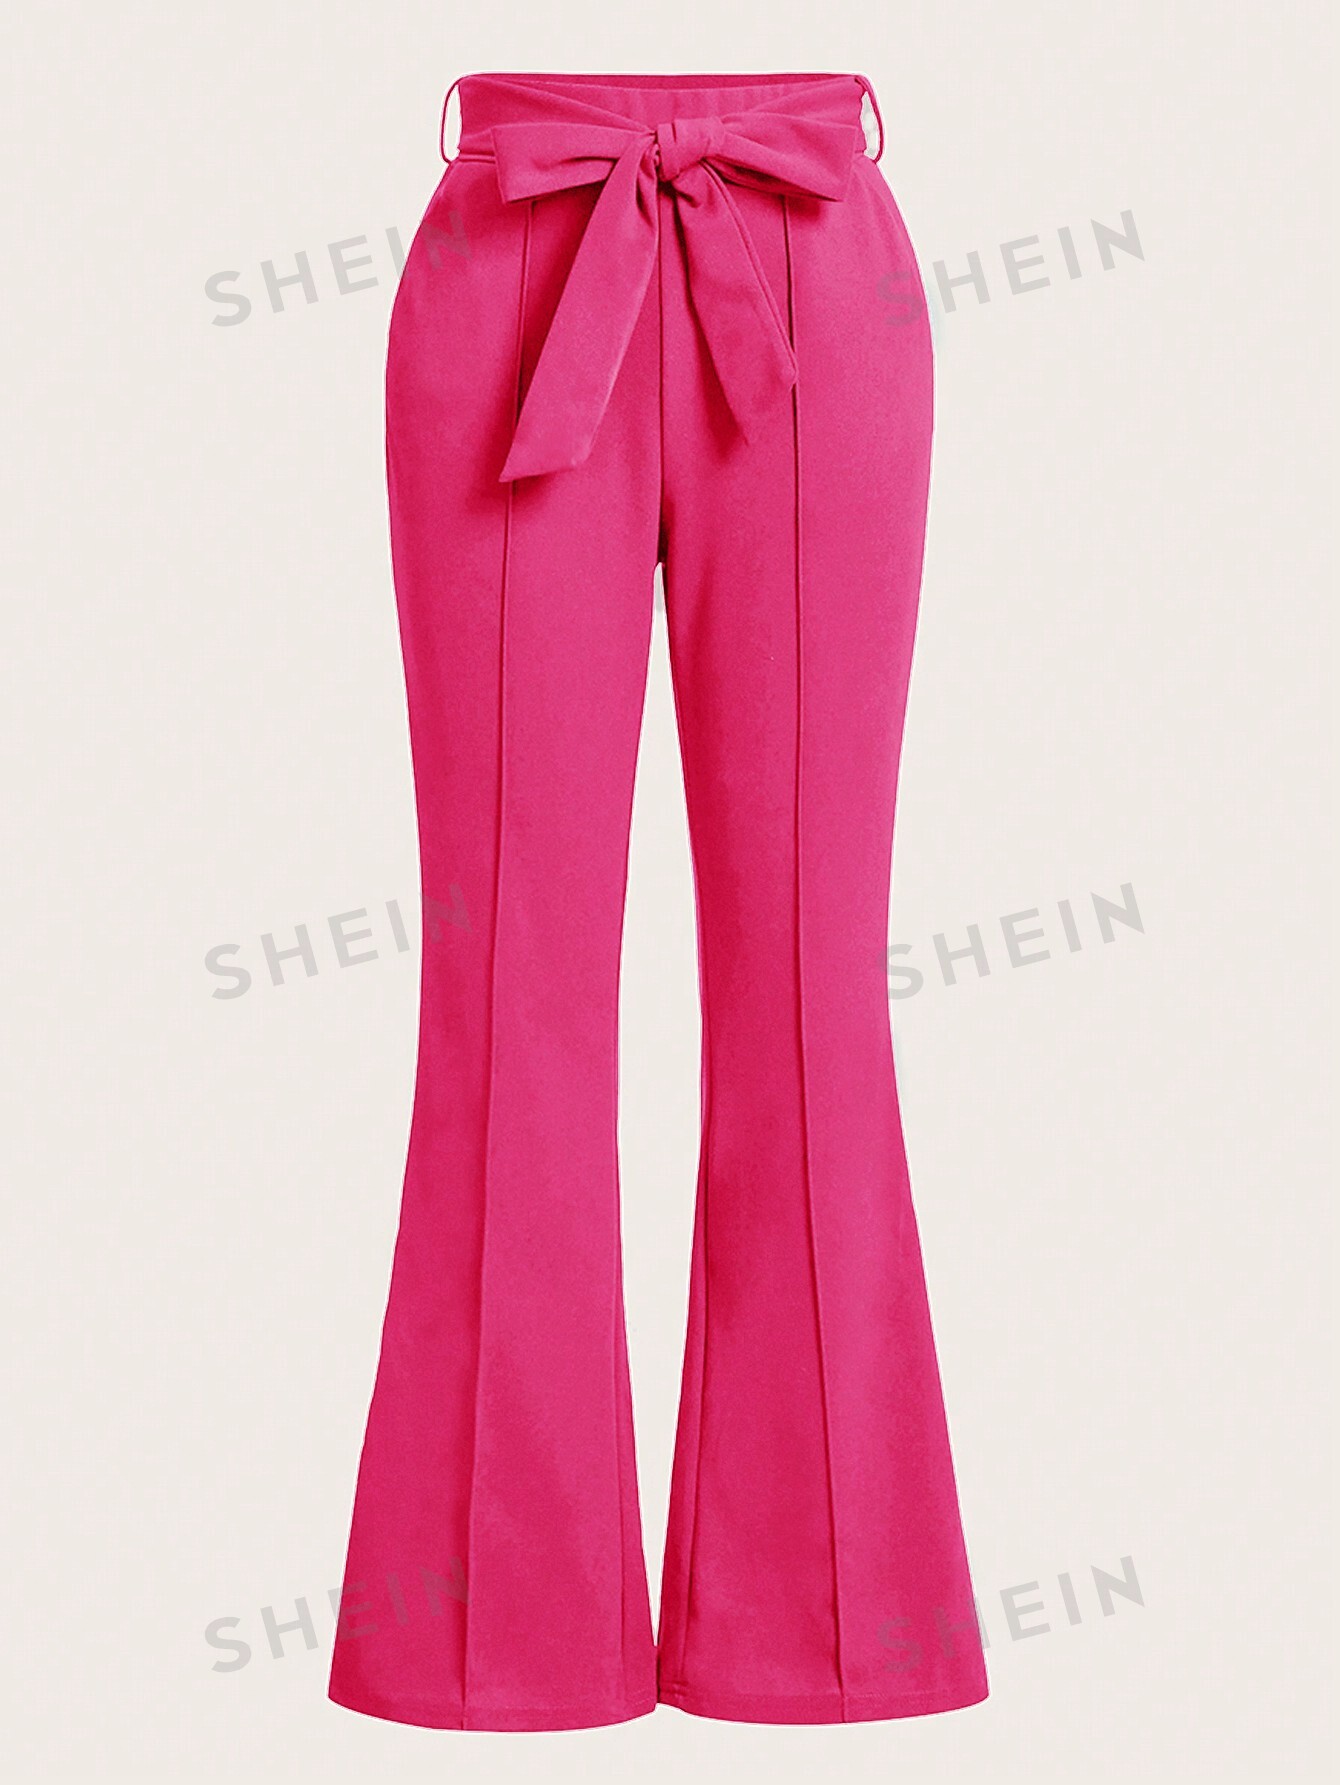 SHEIN Clasi Женские брюки однотонного цвета с расклешенным низом, ярко-розовый женские расклешенные брюки на шнурке 3 цвета